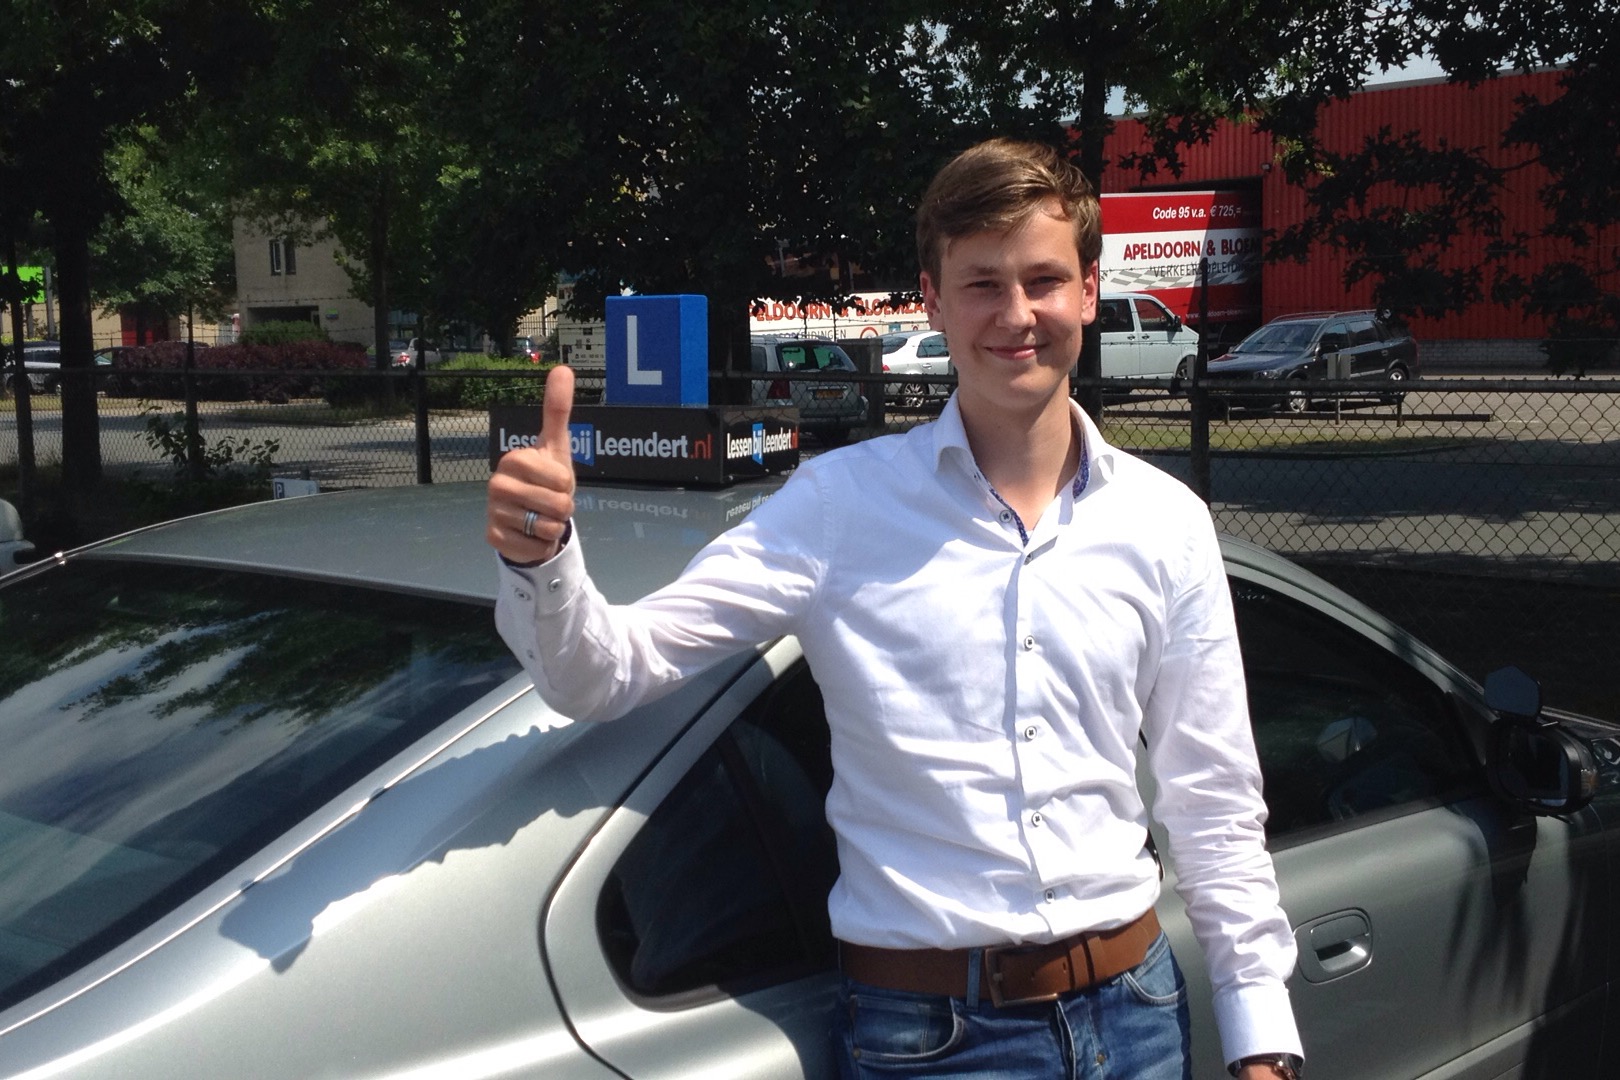 Marc geslaagd voor rijbewijs in Apeldoorn